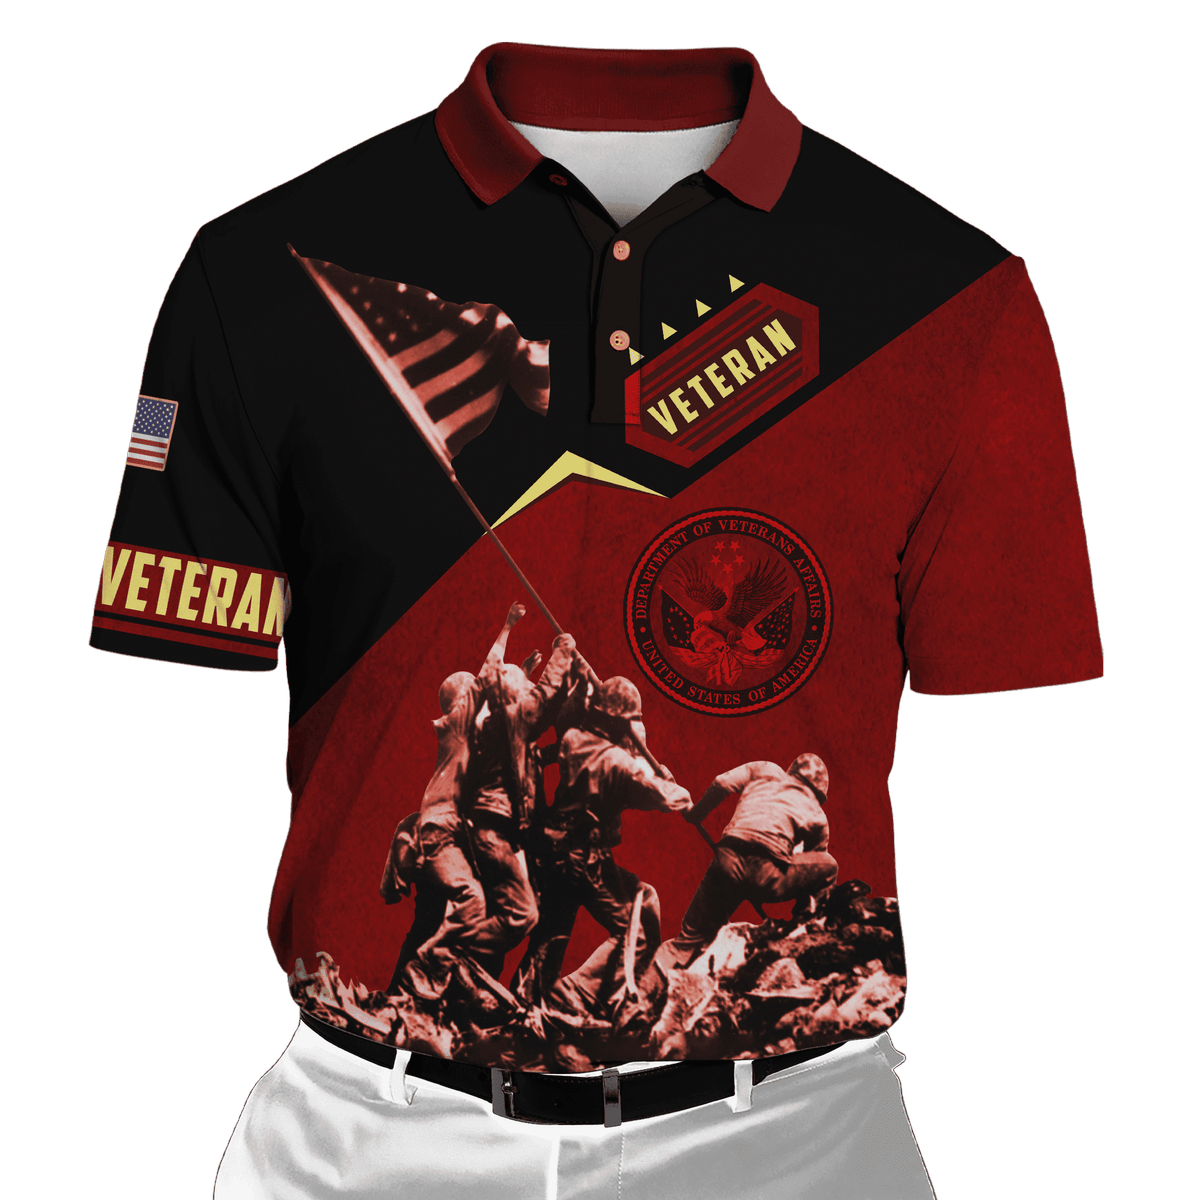 US Veteran - Raising The Flag On Iwo Jima Unisex Shirts MH01102201 - VET